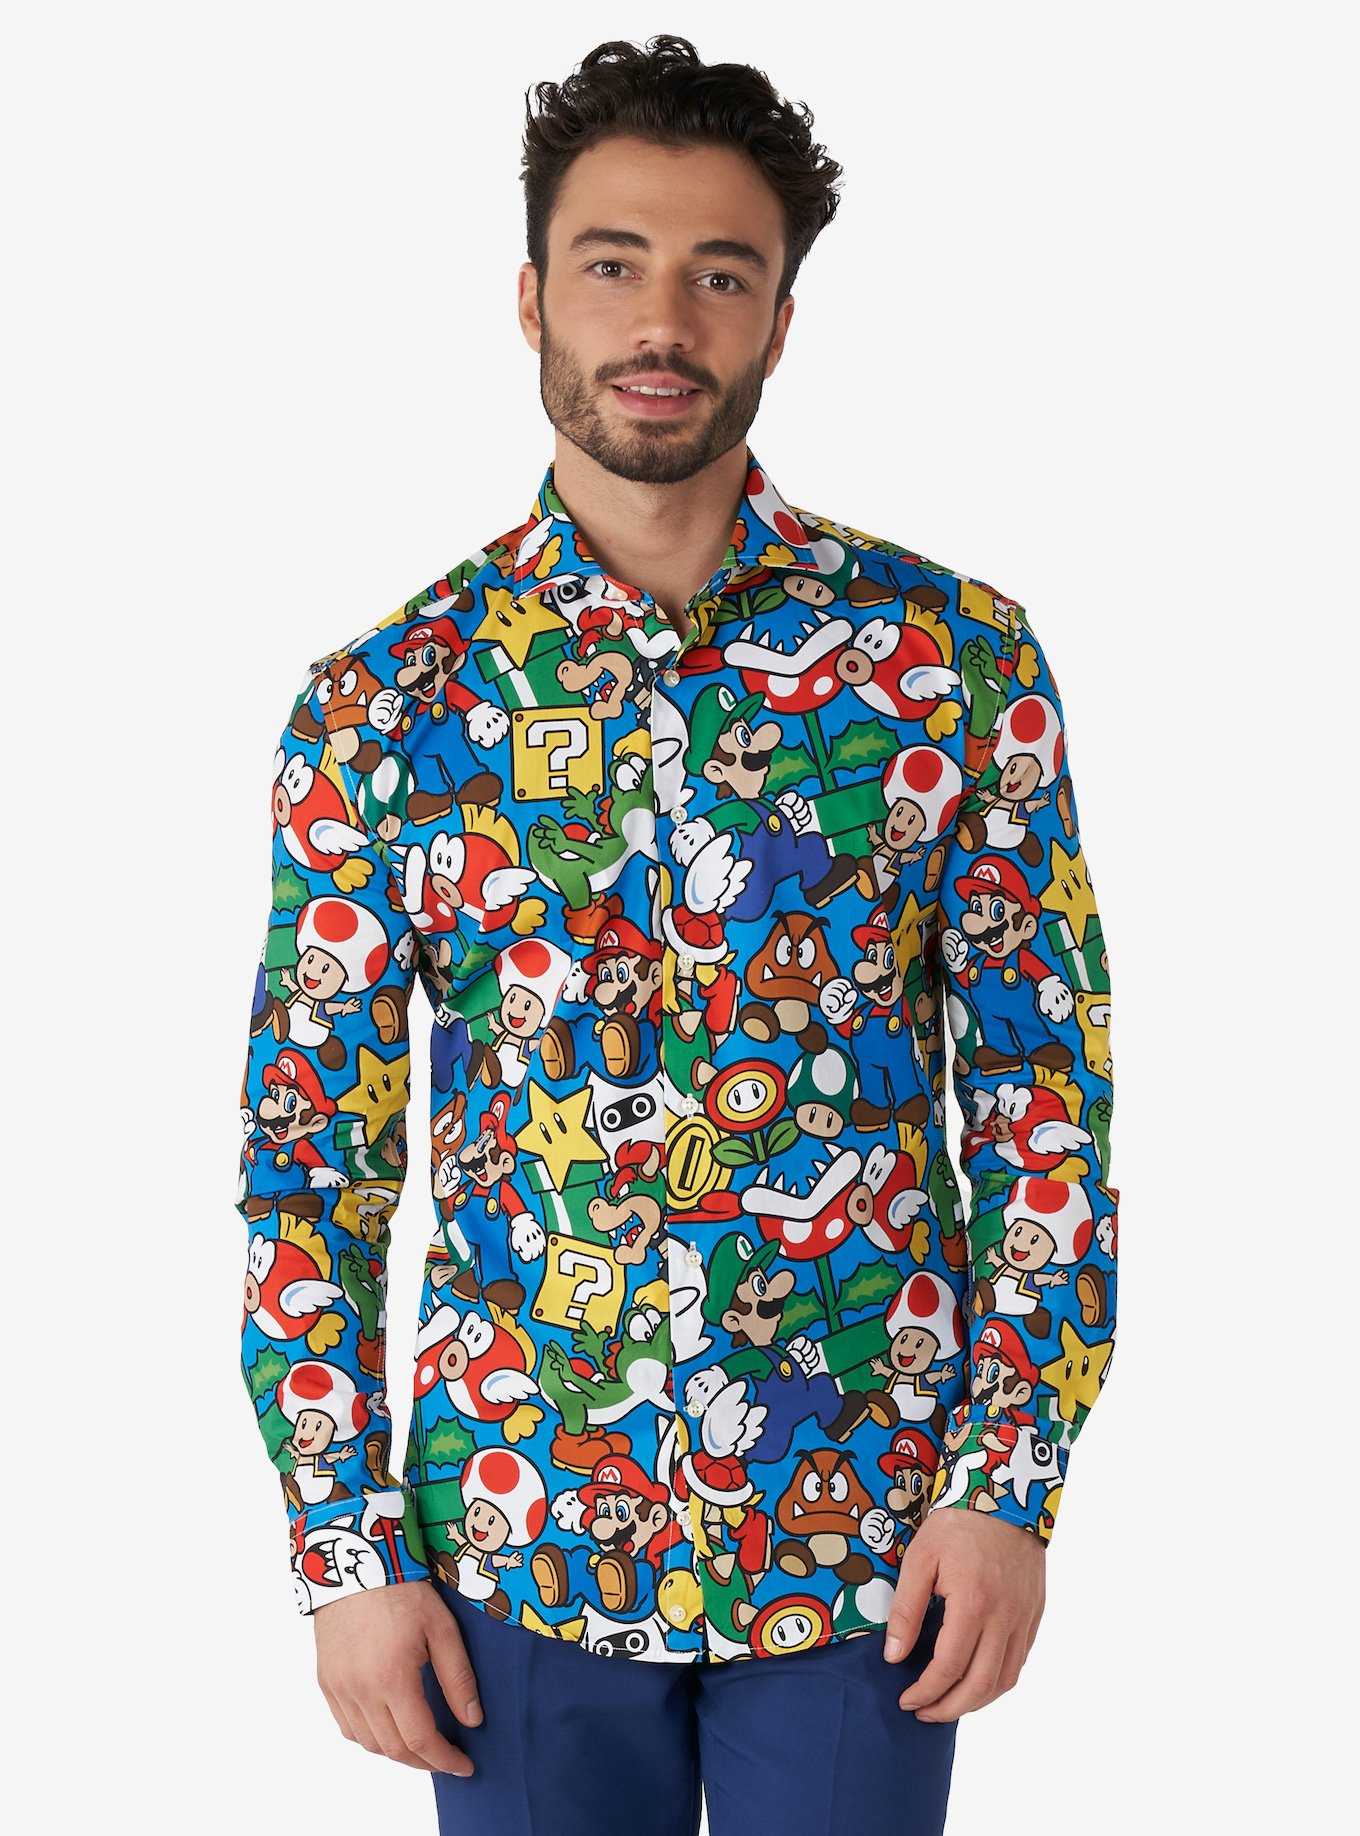 Opposuits Men's Super Mario Bros. Shirt, , hi-res